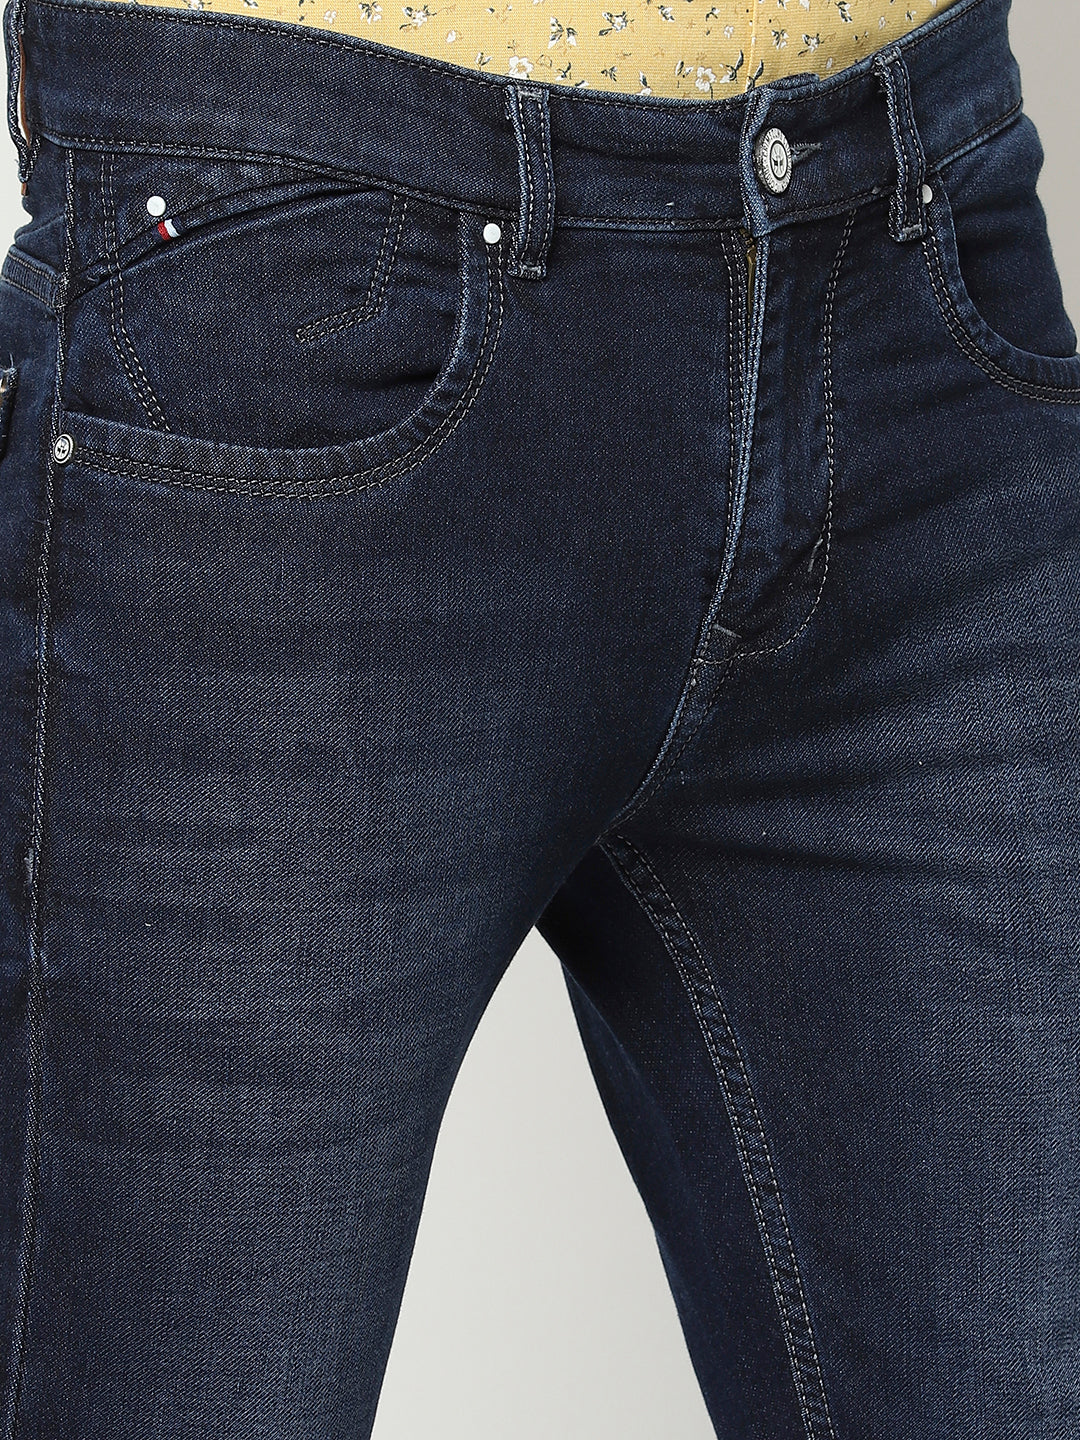 Navy Blue 5 Pocket Jeans-Men Jeans-Crimsoune Club